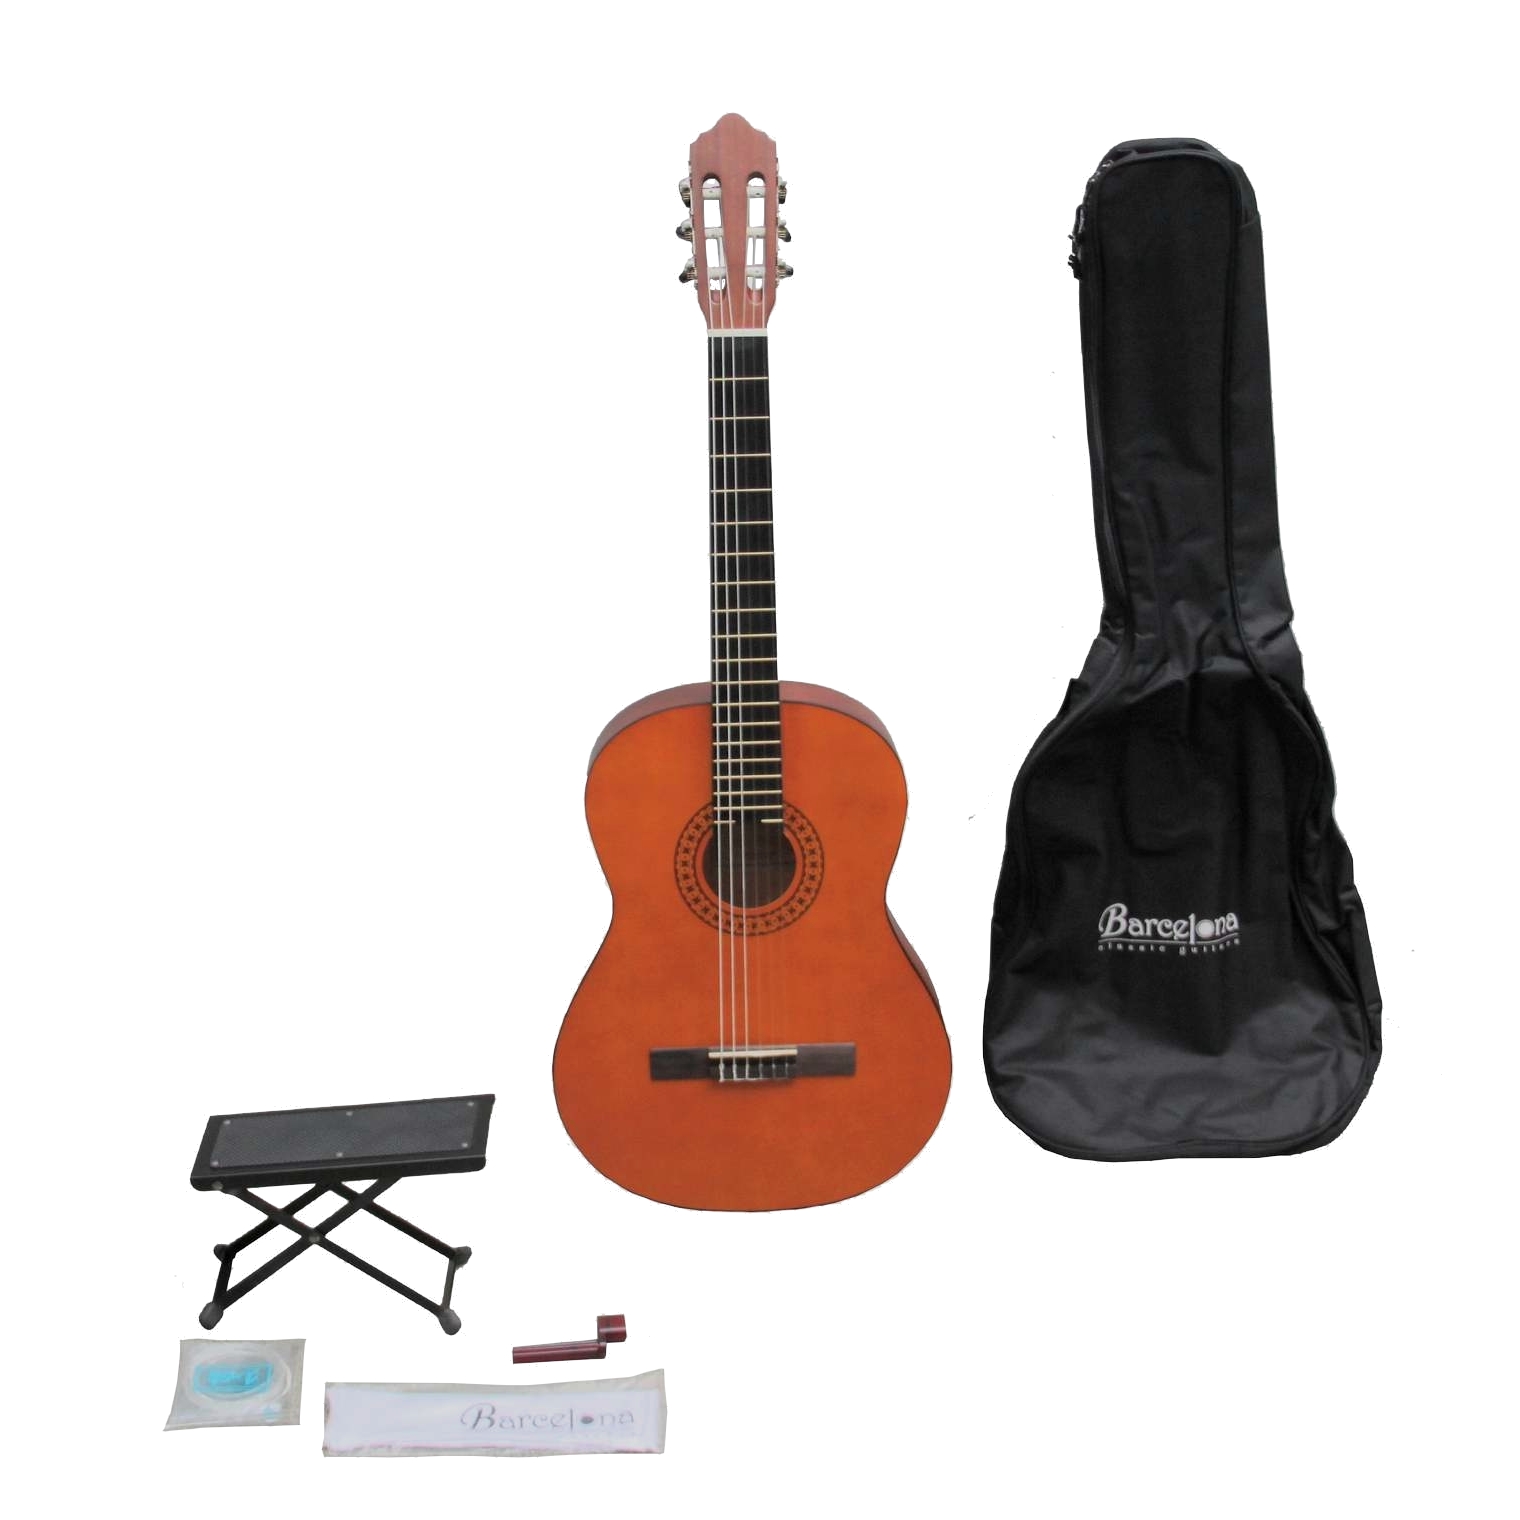 BARCELONA CG11K/NA - набор: классическая гитара, чехол, подставка, струны